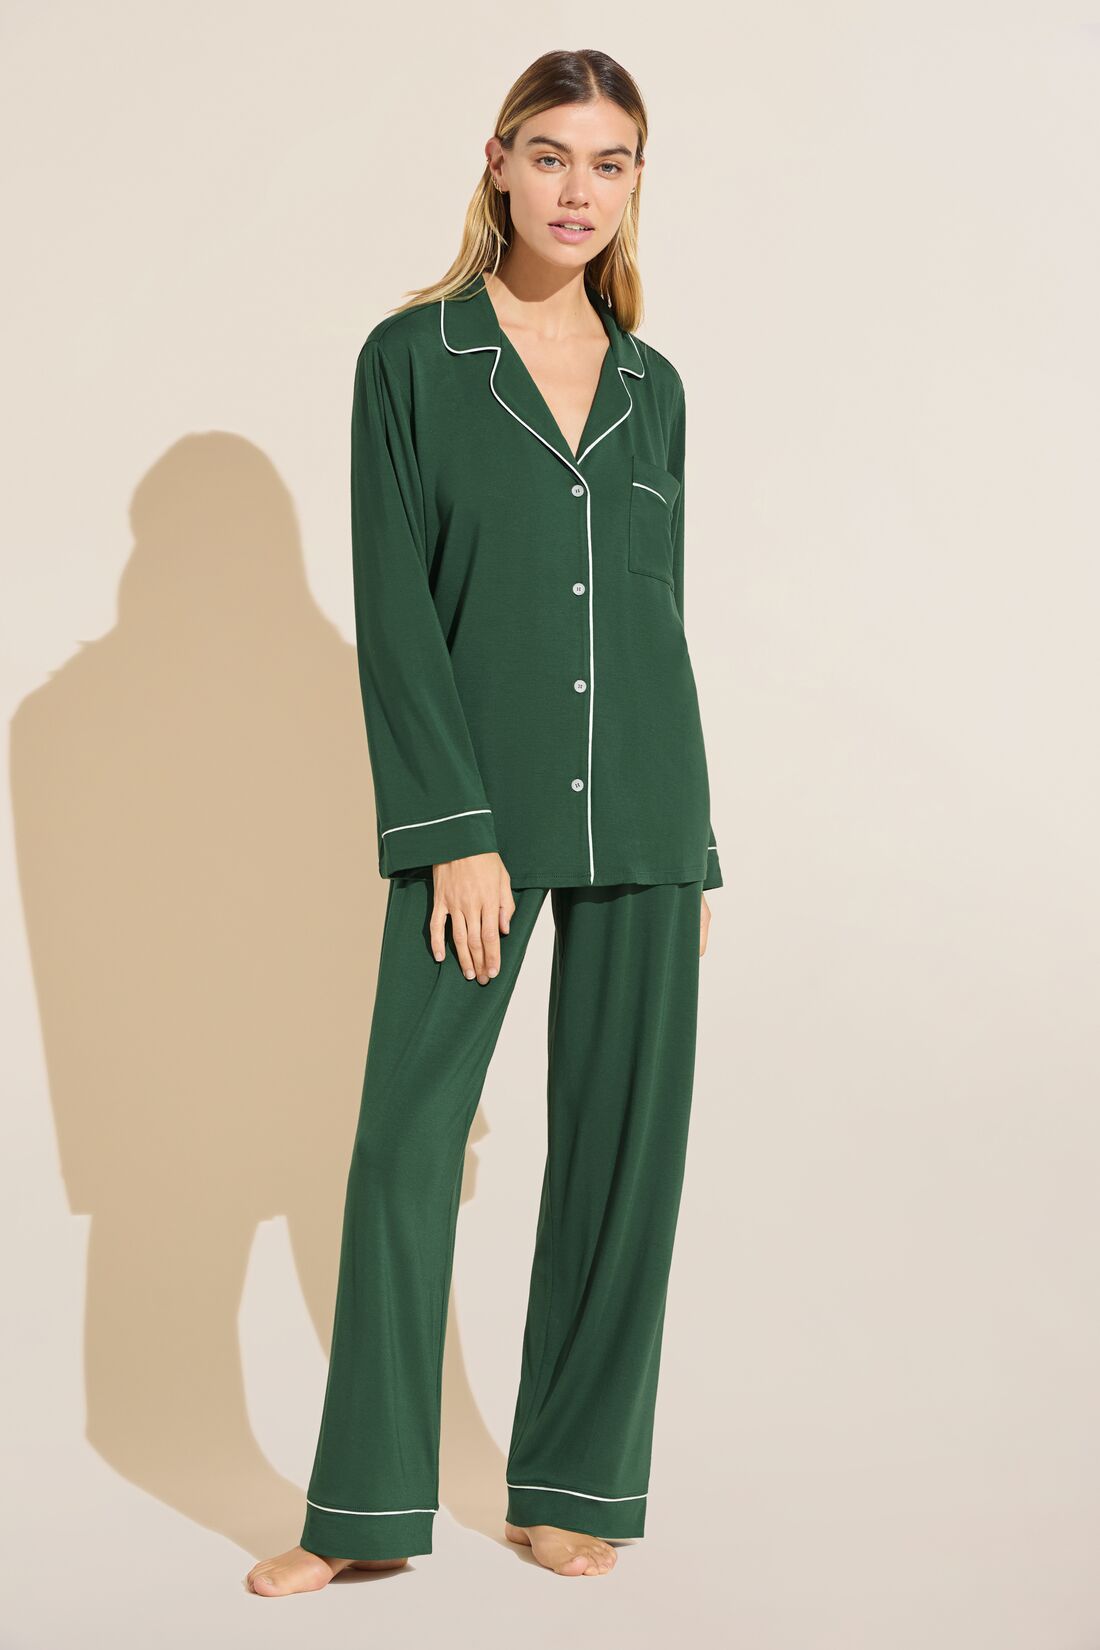 Monogrammed Pajamas Set